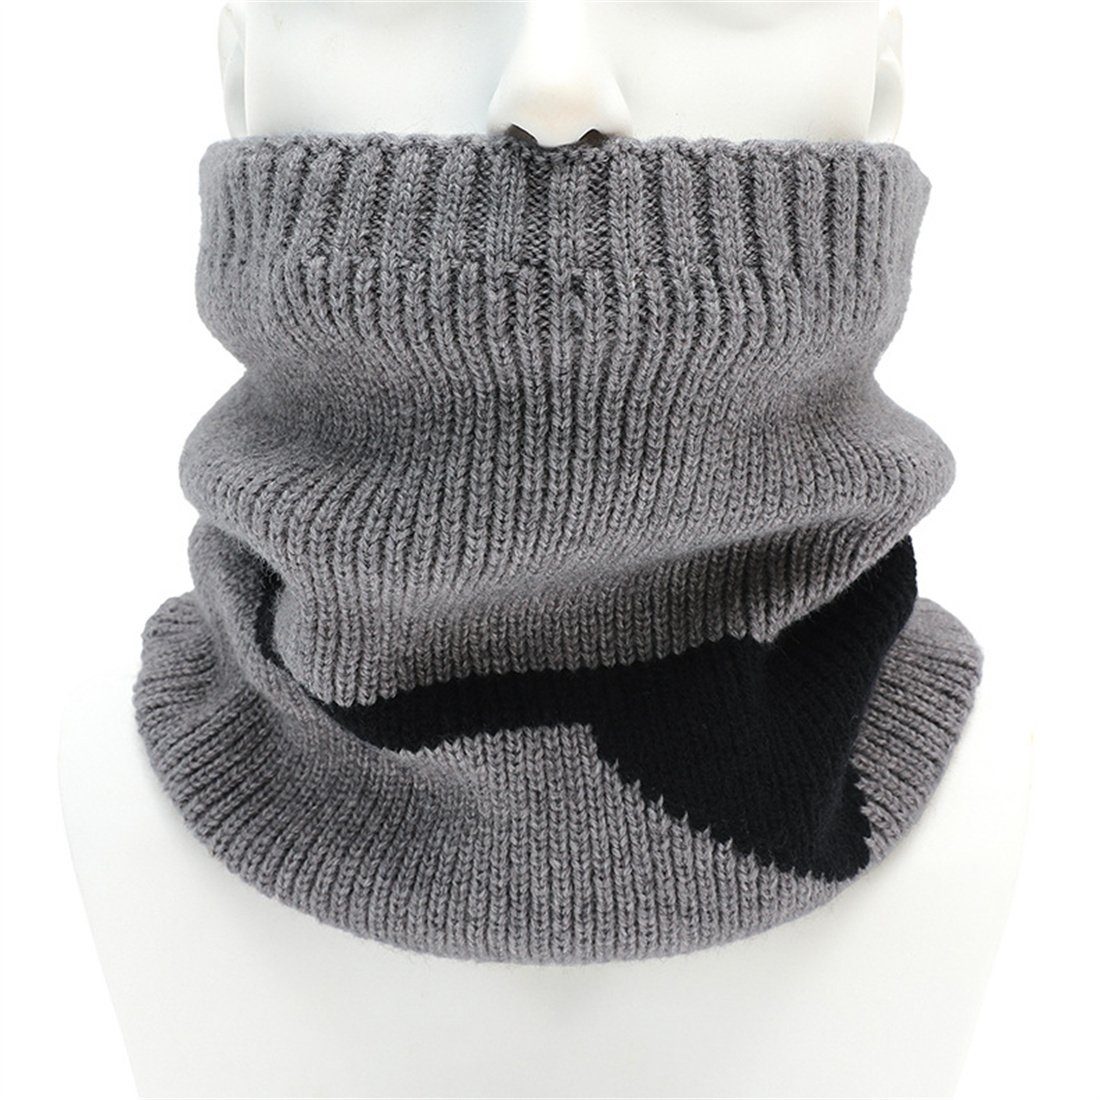 DÖRÖY Modeschal Unisex warm gepolstert Schal,Winter Abdeckung gestrickt gestrickt Hals Grau